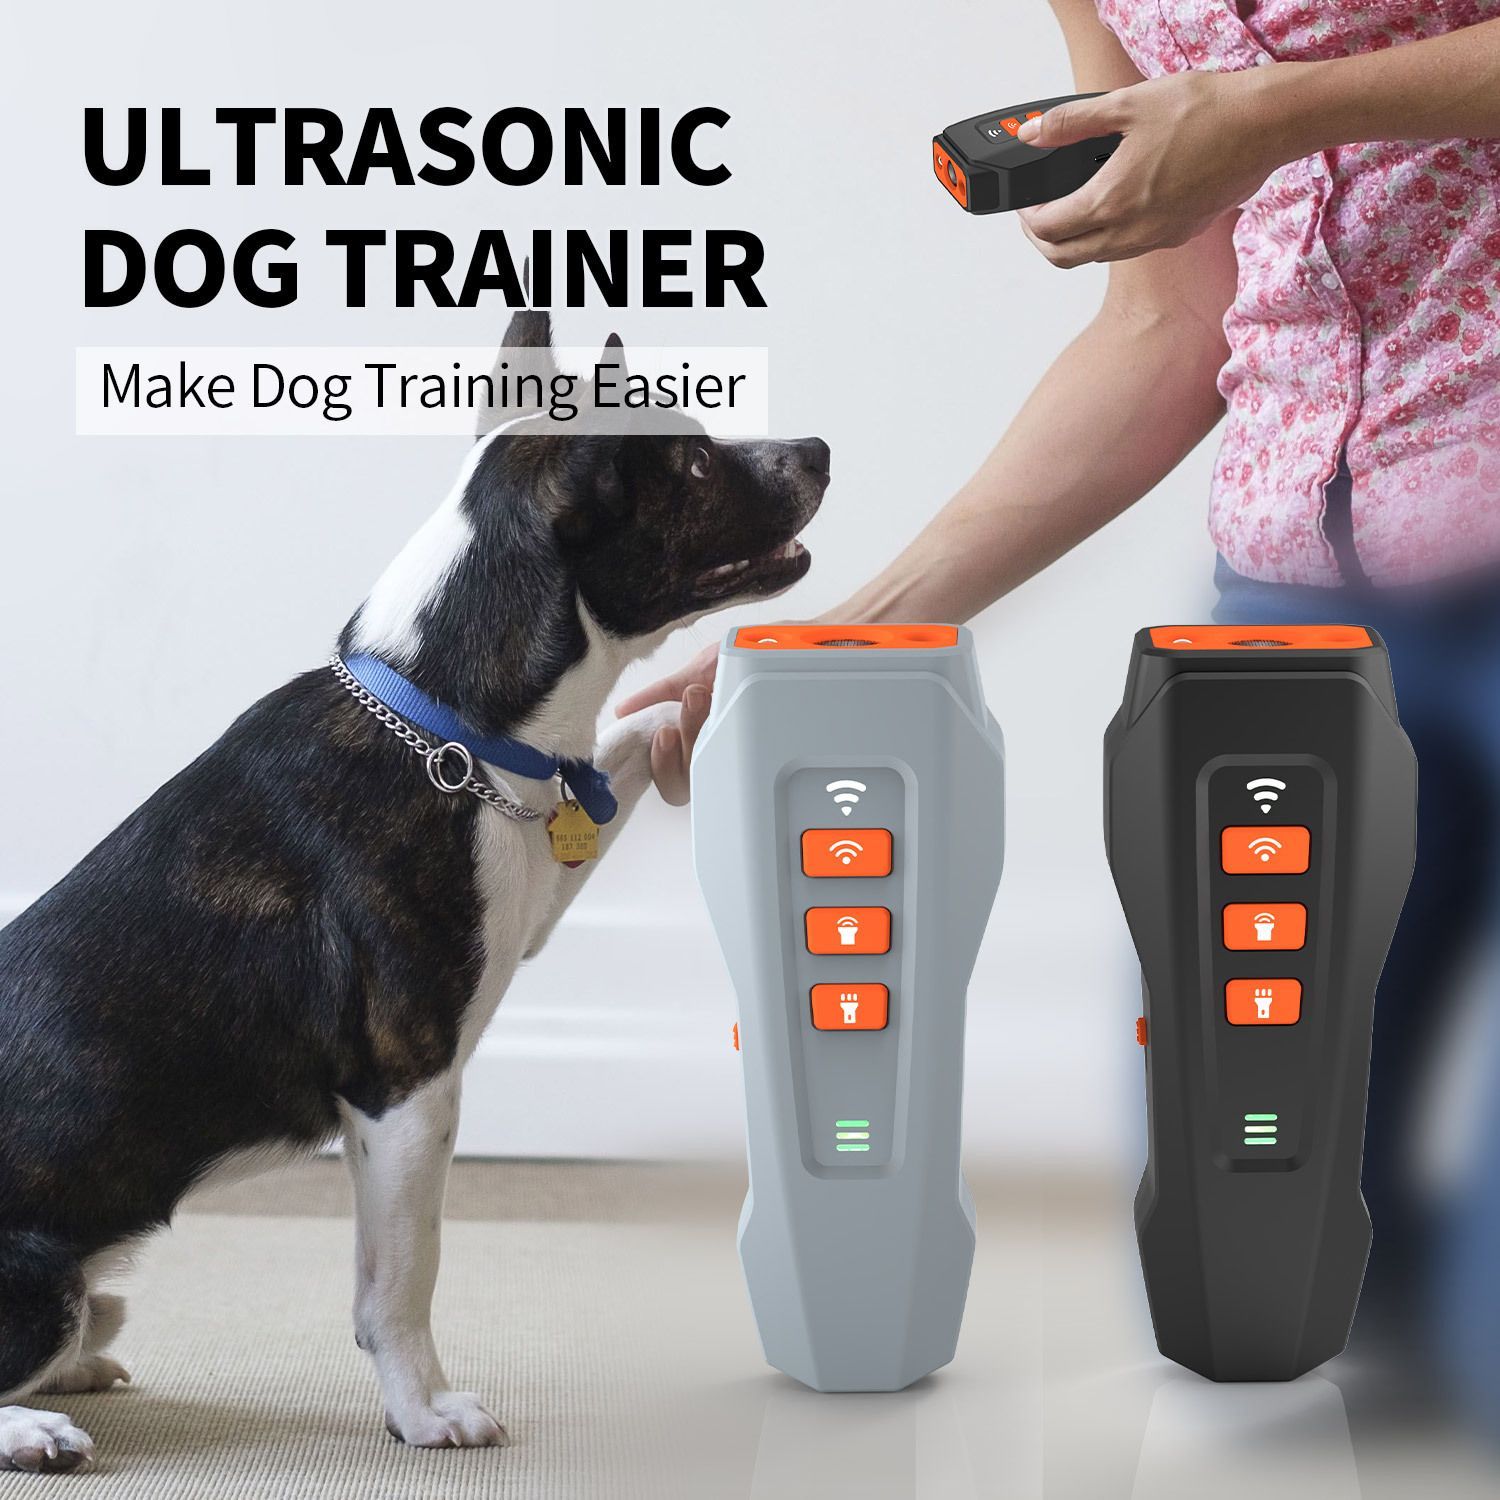 無駄吠え防止 犬超音波吠え防止器具 ペットトレーニング ムダ吠え防止